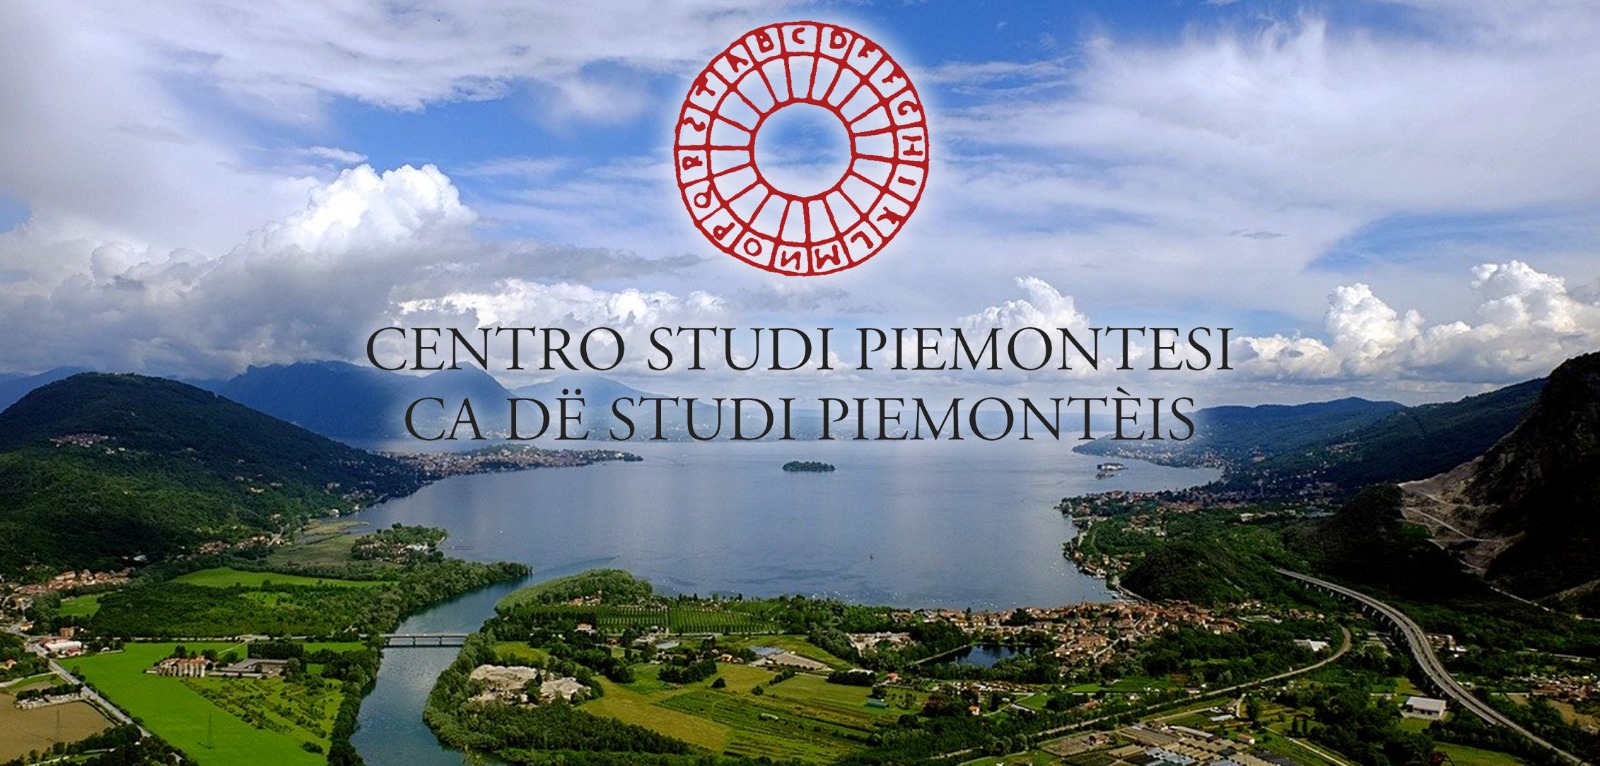 Centro Studi Piemontesi - Cerea